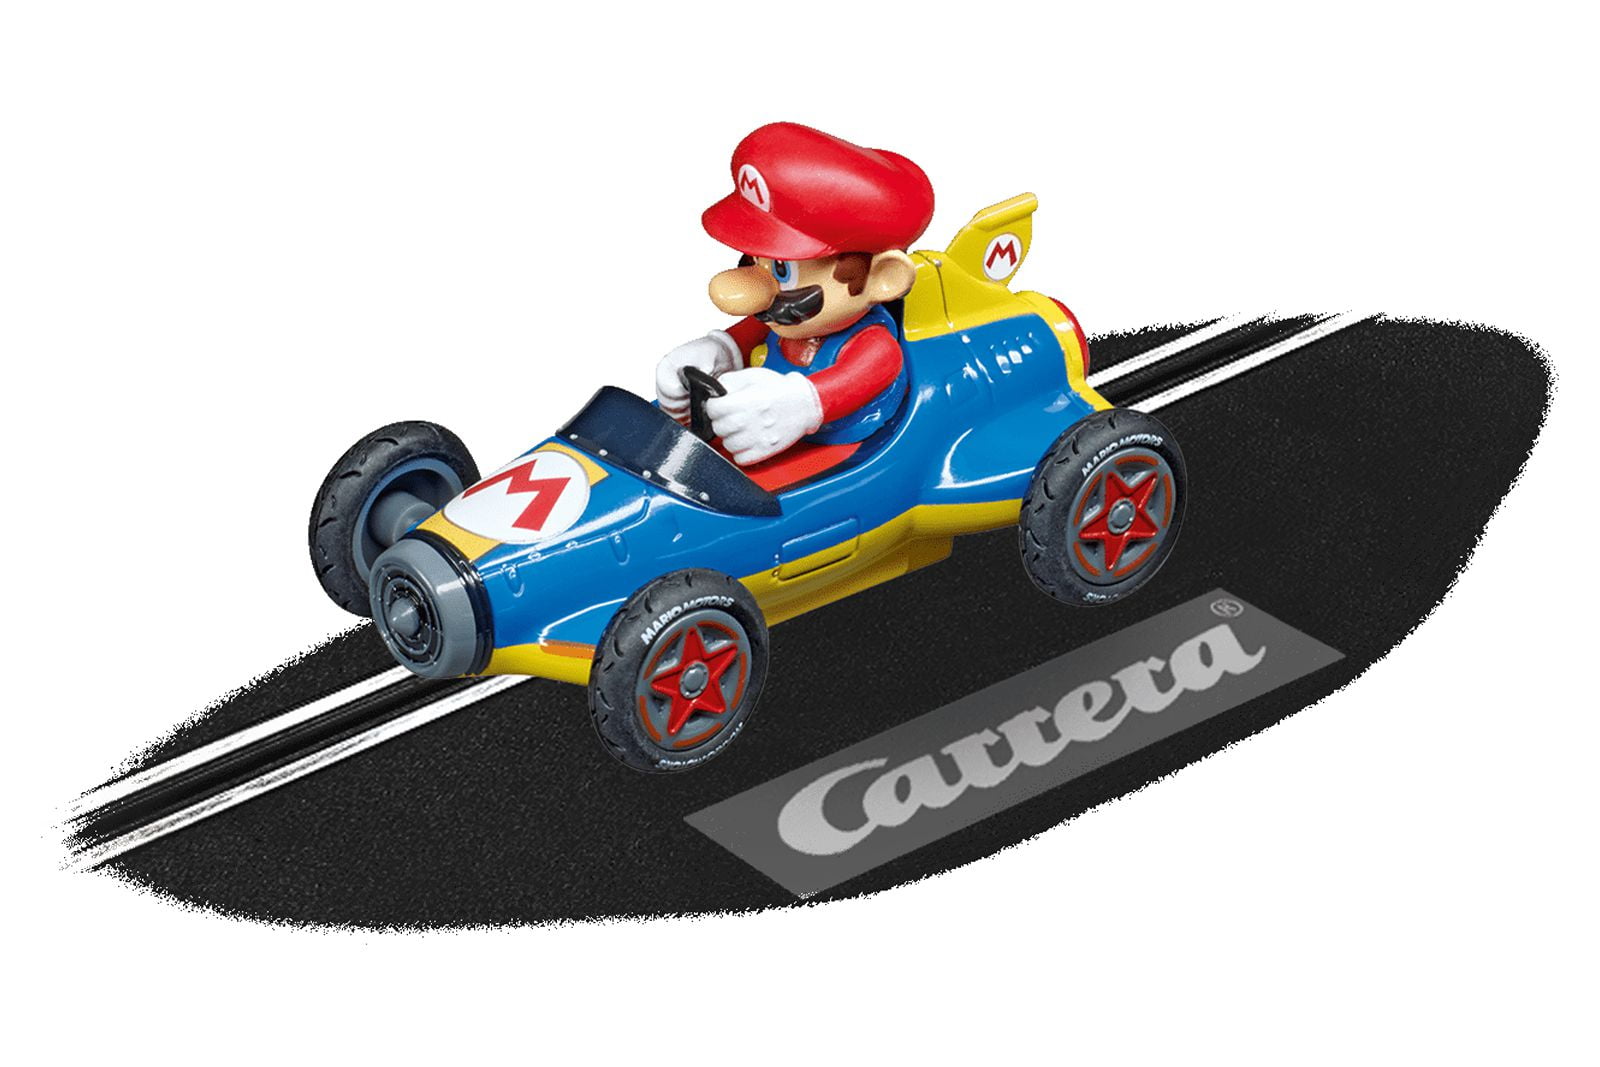 Carrera GO!!! Mario Kart 